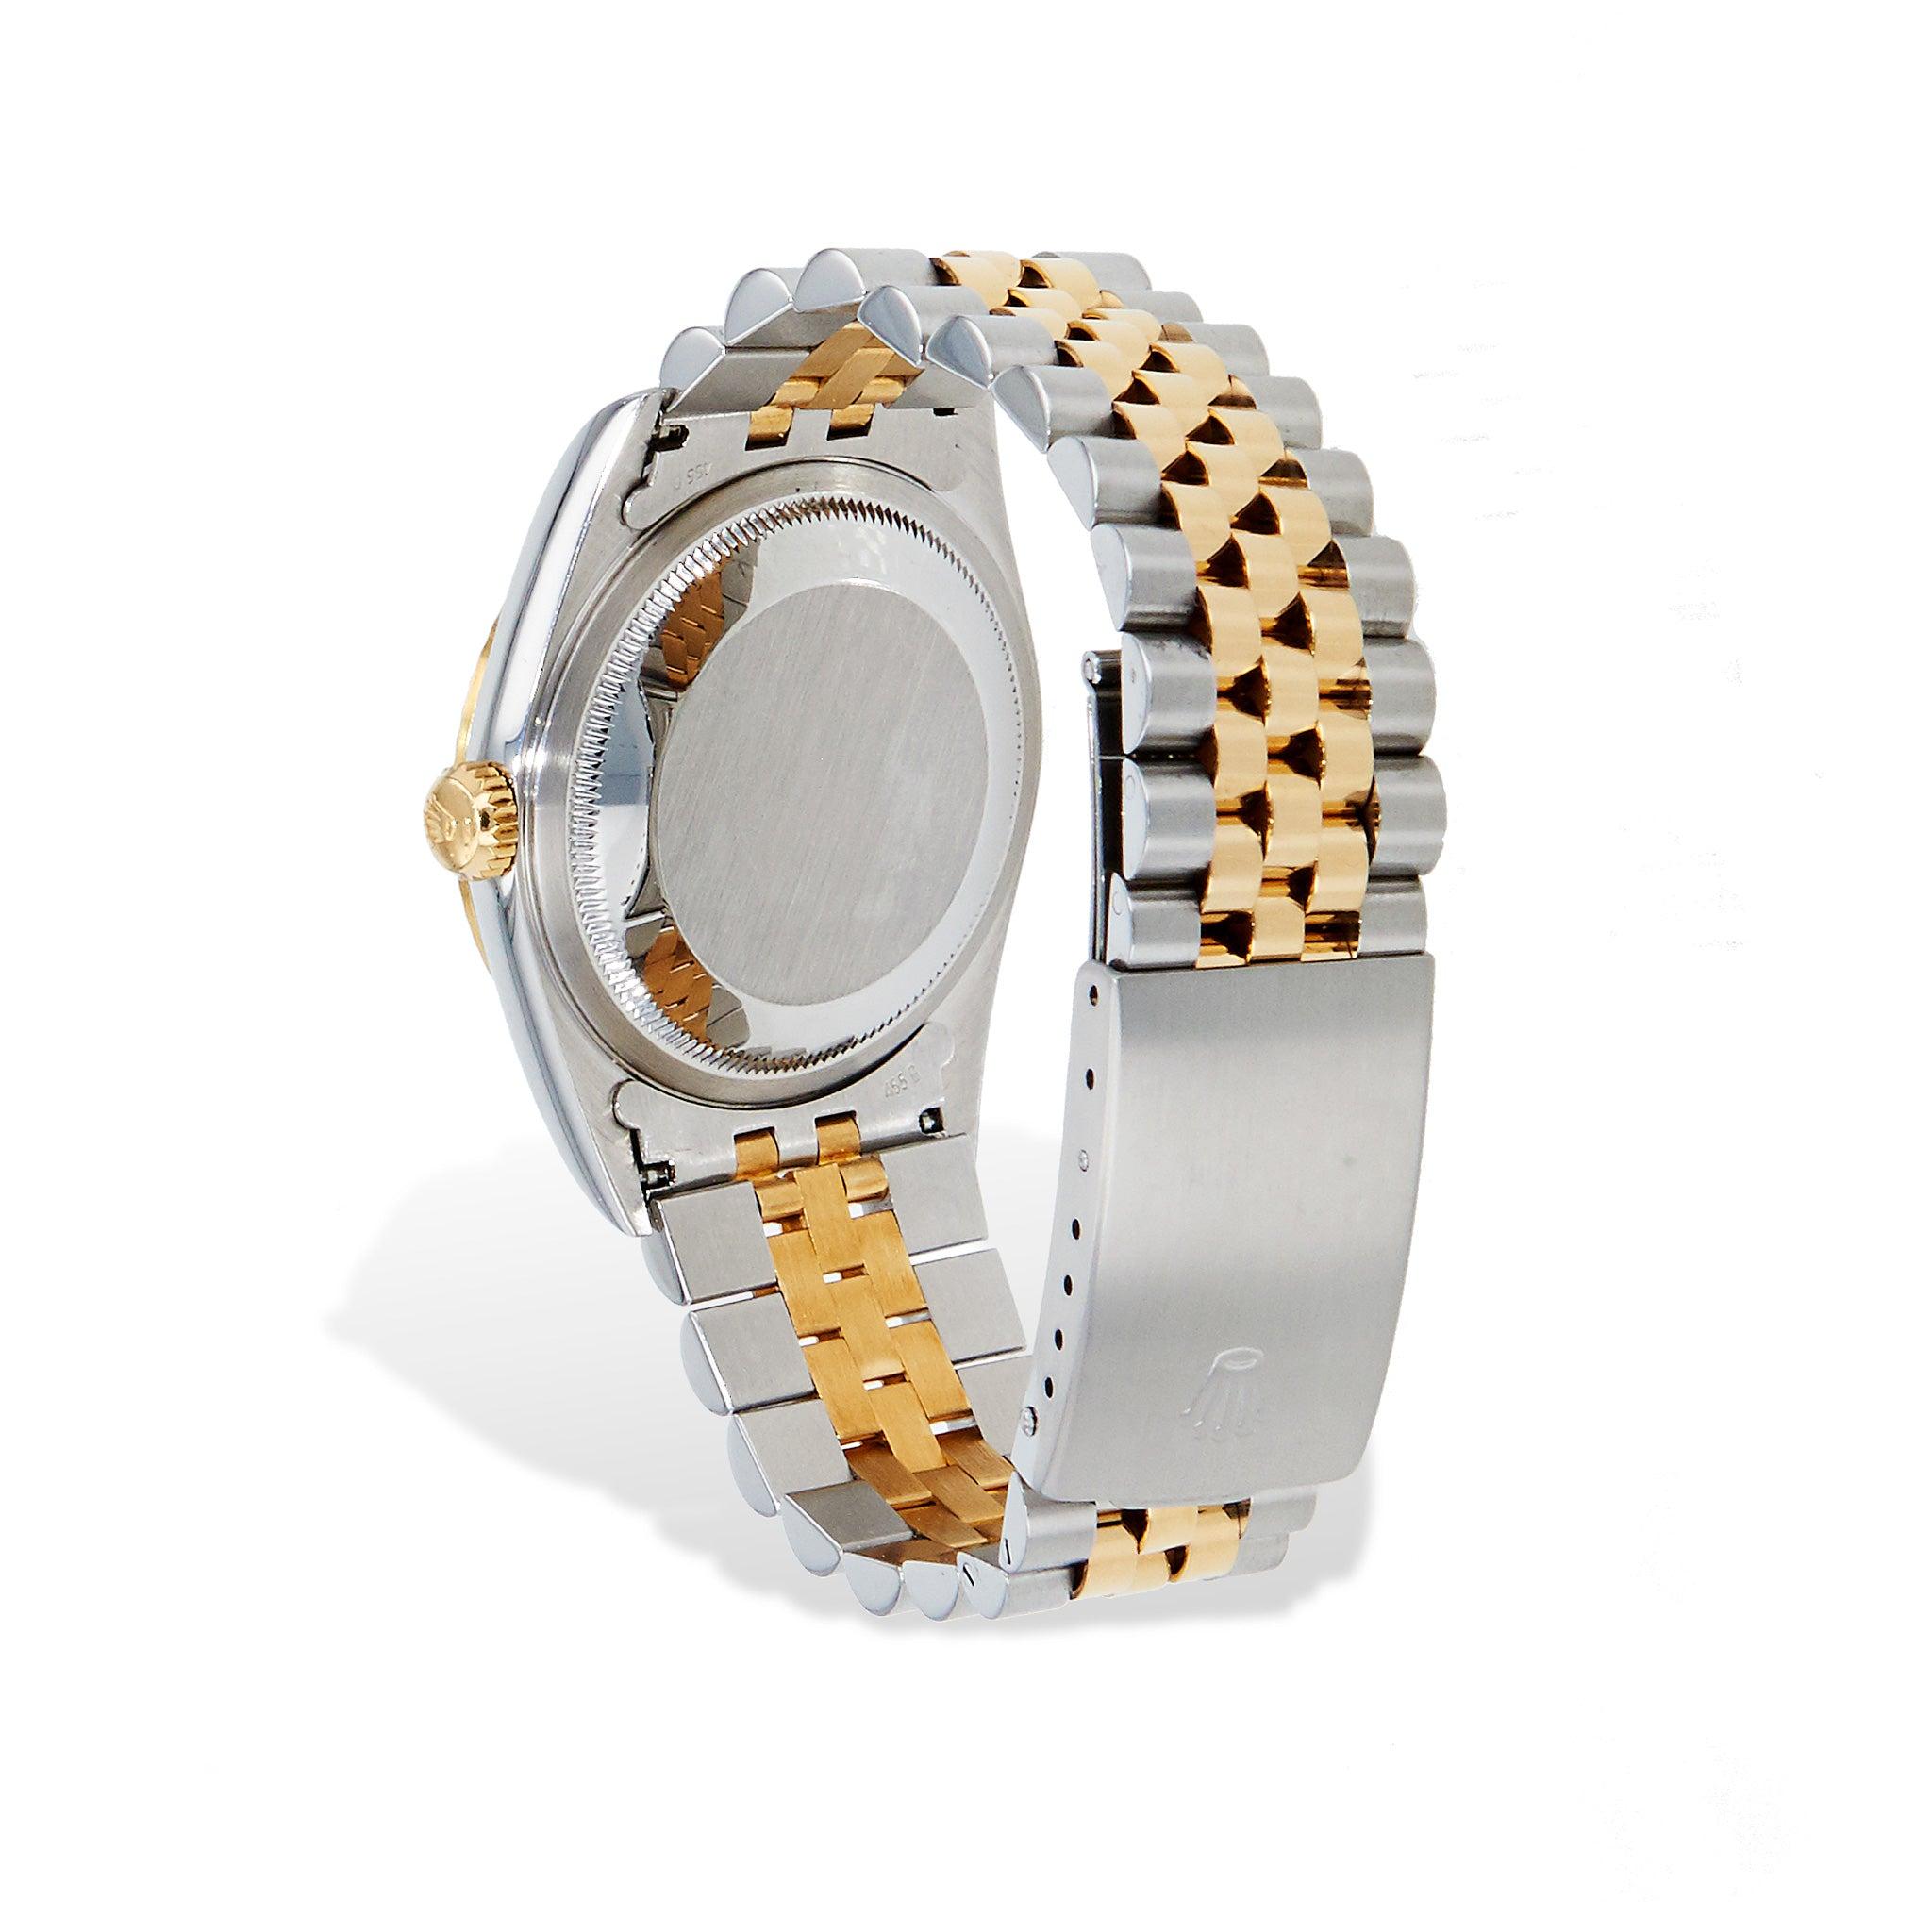 Cette montre Rolex Datejust Two-tone 36mm Estate, d'une sophistication intemporelle, est dotée d'un superbe cadran champagne et d'un bracelet bicolore - c.C. 2000. Un accessoire parfait pour toutes les tenues.
Montre Rolex Datejust Two-tone 36mm